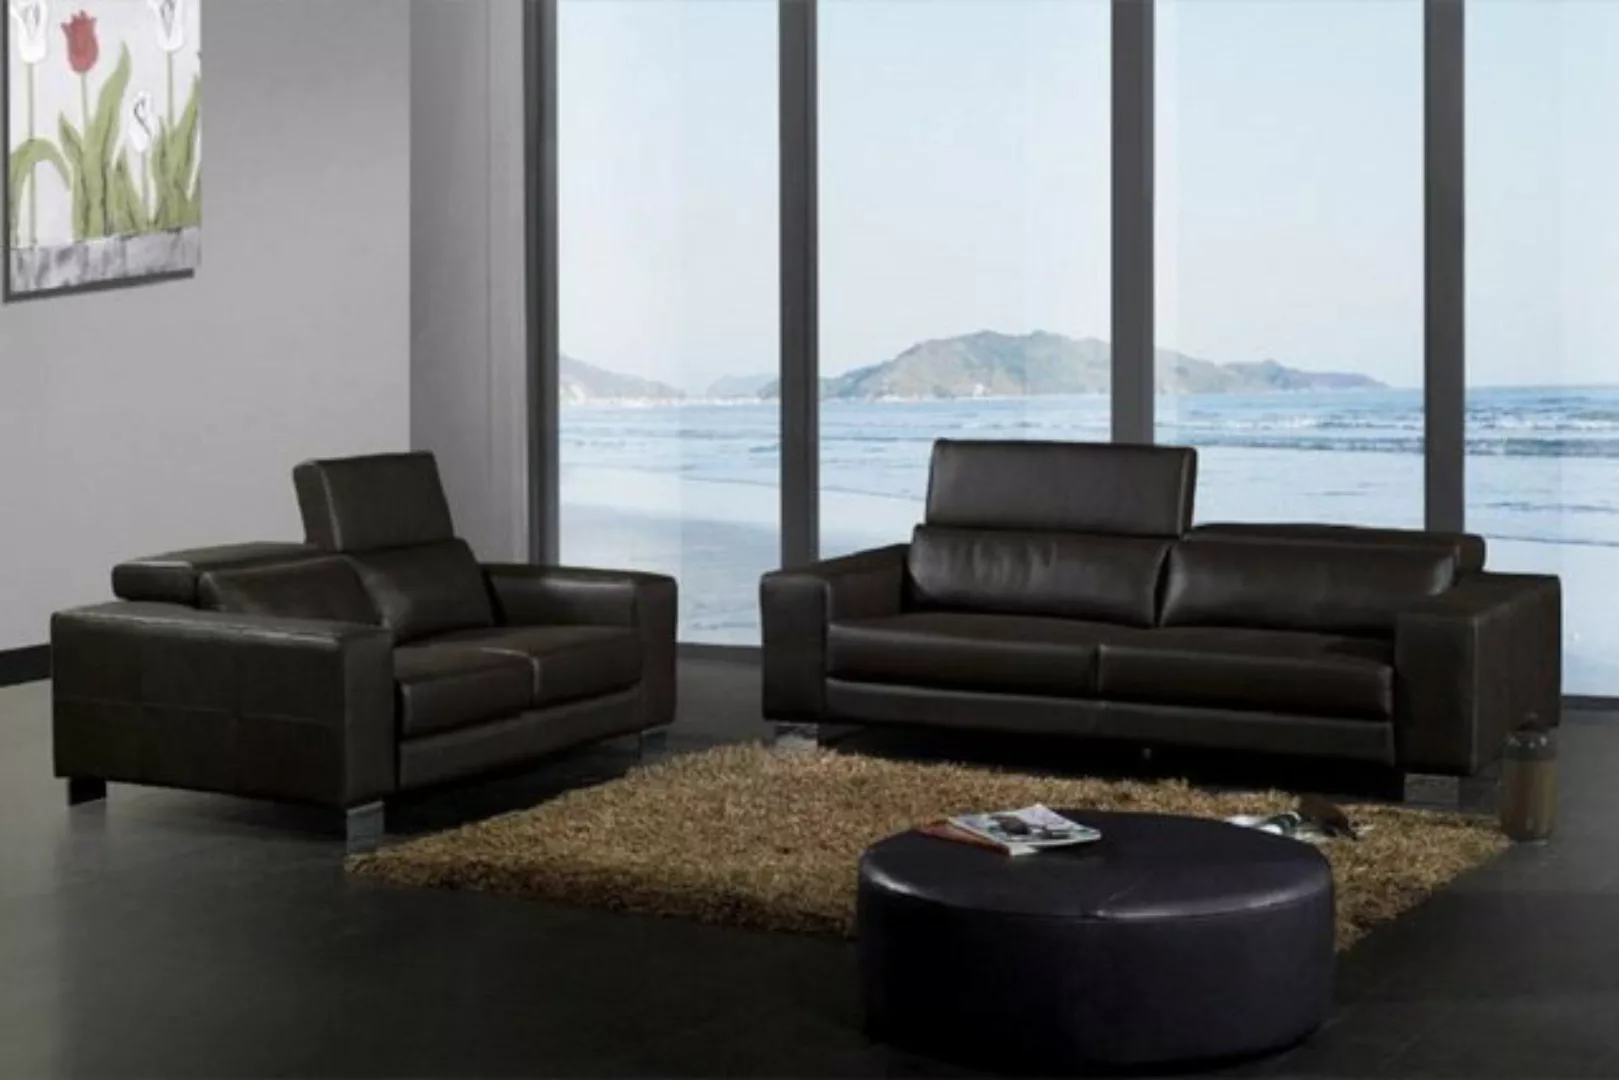 JVmoebel Sofa Ledersofa Couch Wohnlandschaft 3+2 Sitzer Garnitur Design Mod günstig online kaufen